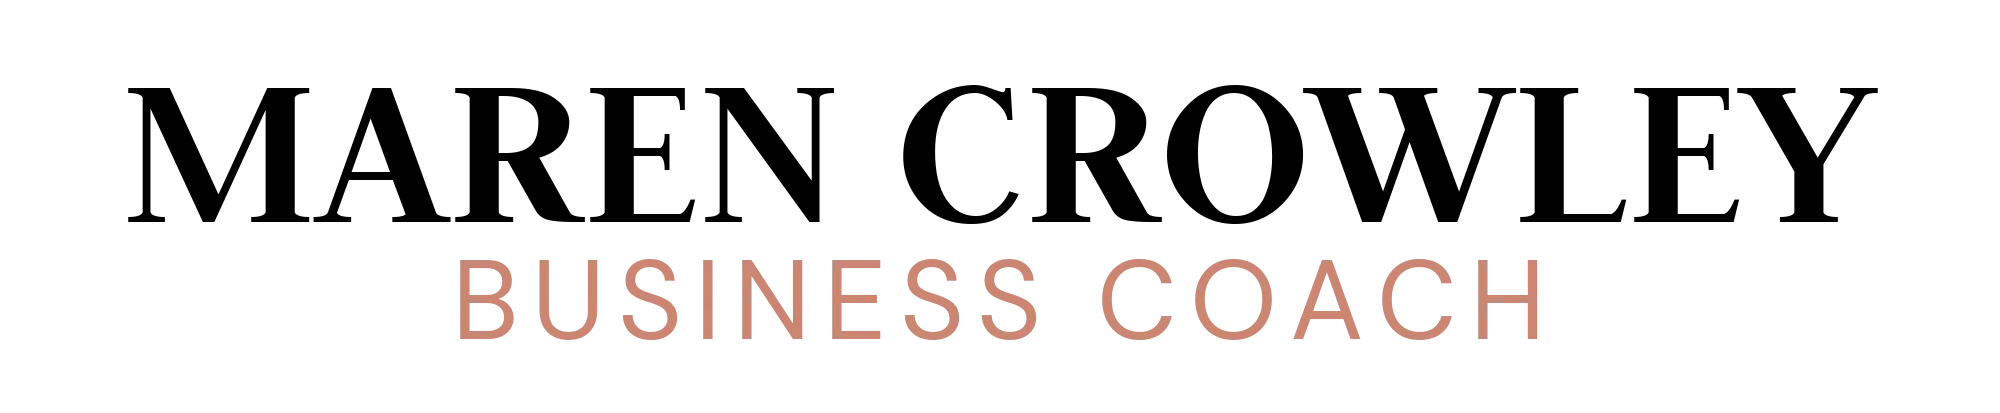 Maren-Business Coach-Logo